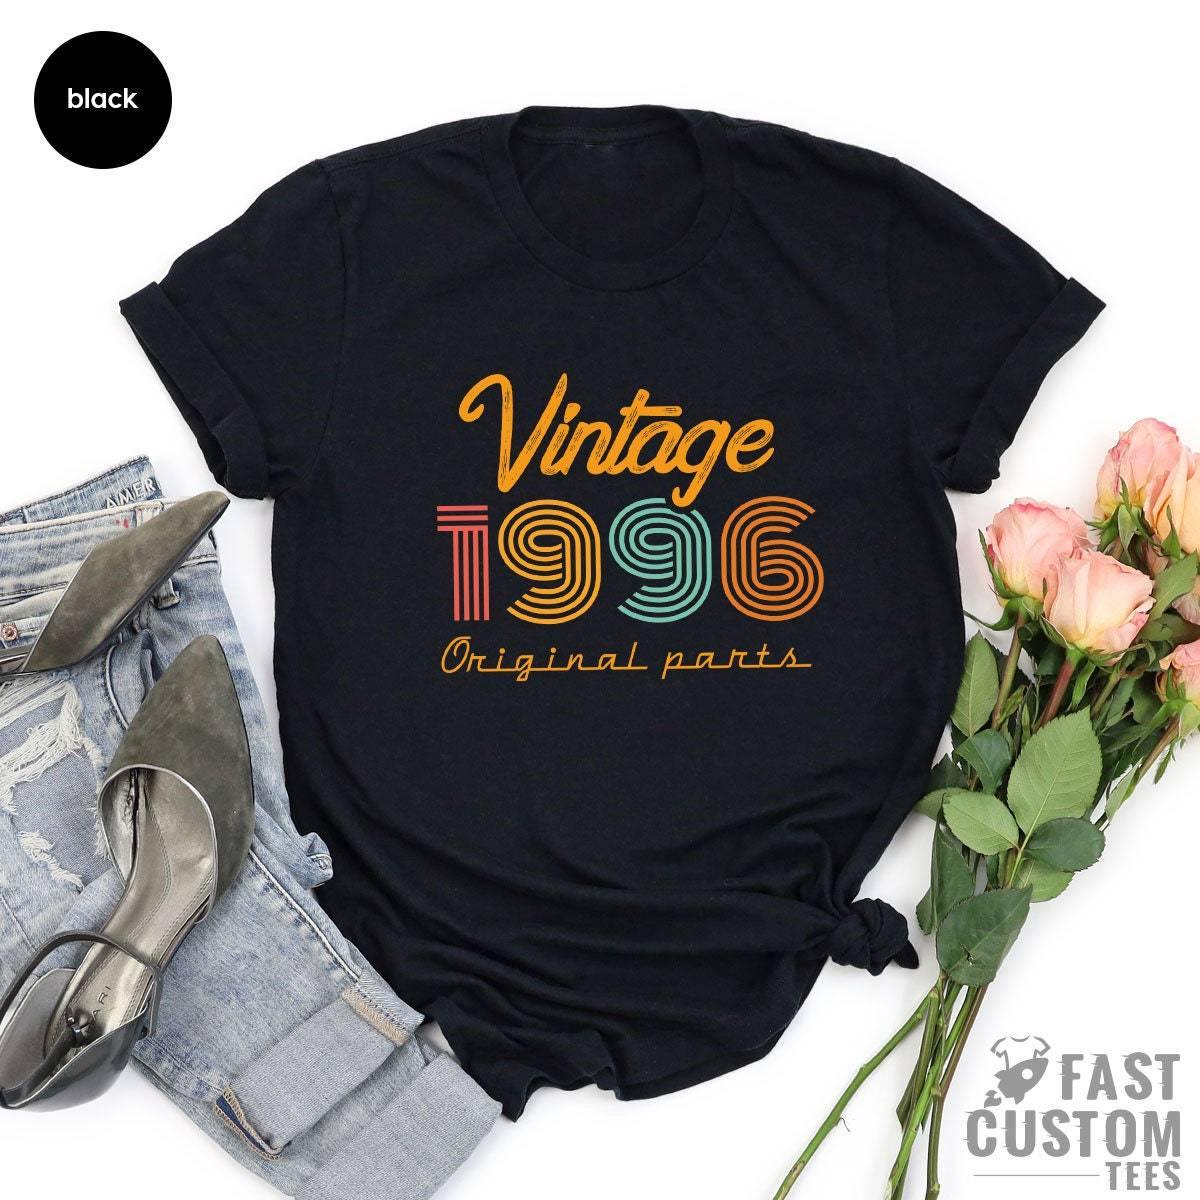 25th Birthday Shirt, Vintage T Shirt, Vintage 1996 Shirt, 25th Birthday Gift For Women, 25th Birthday Shirt Men, Retro Shirt, Vintage Shirts - Fastdeliverytees.com